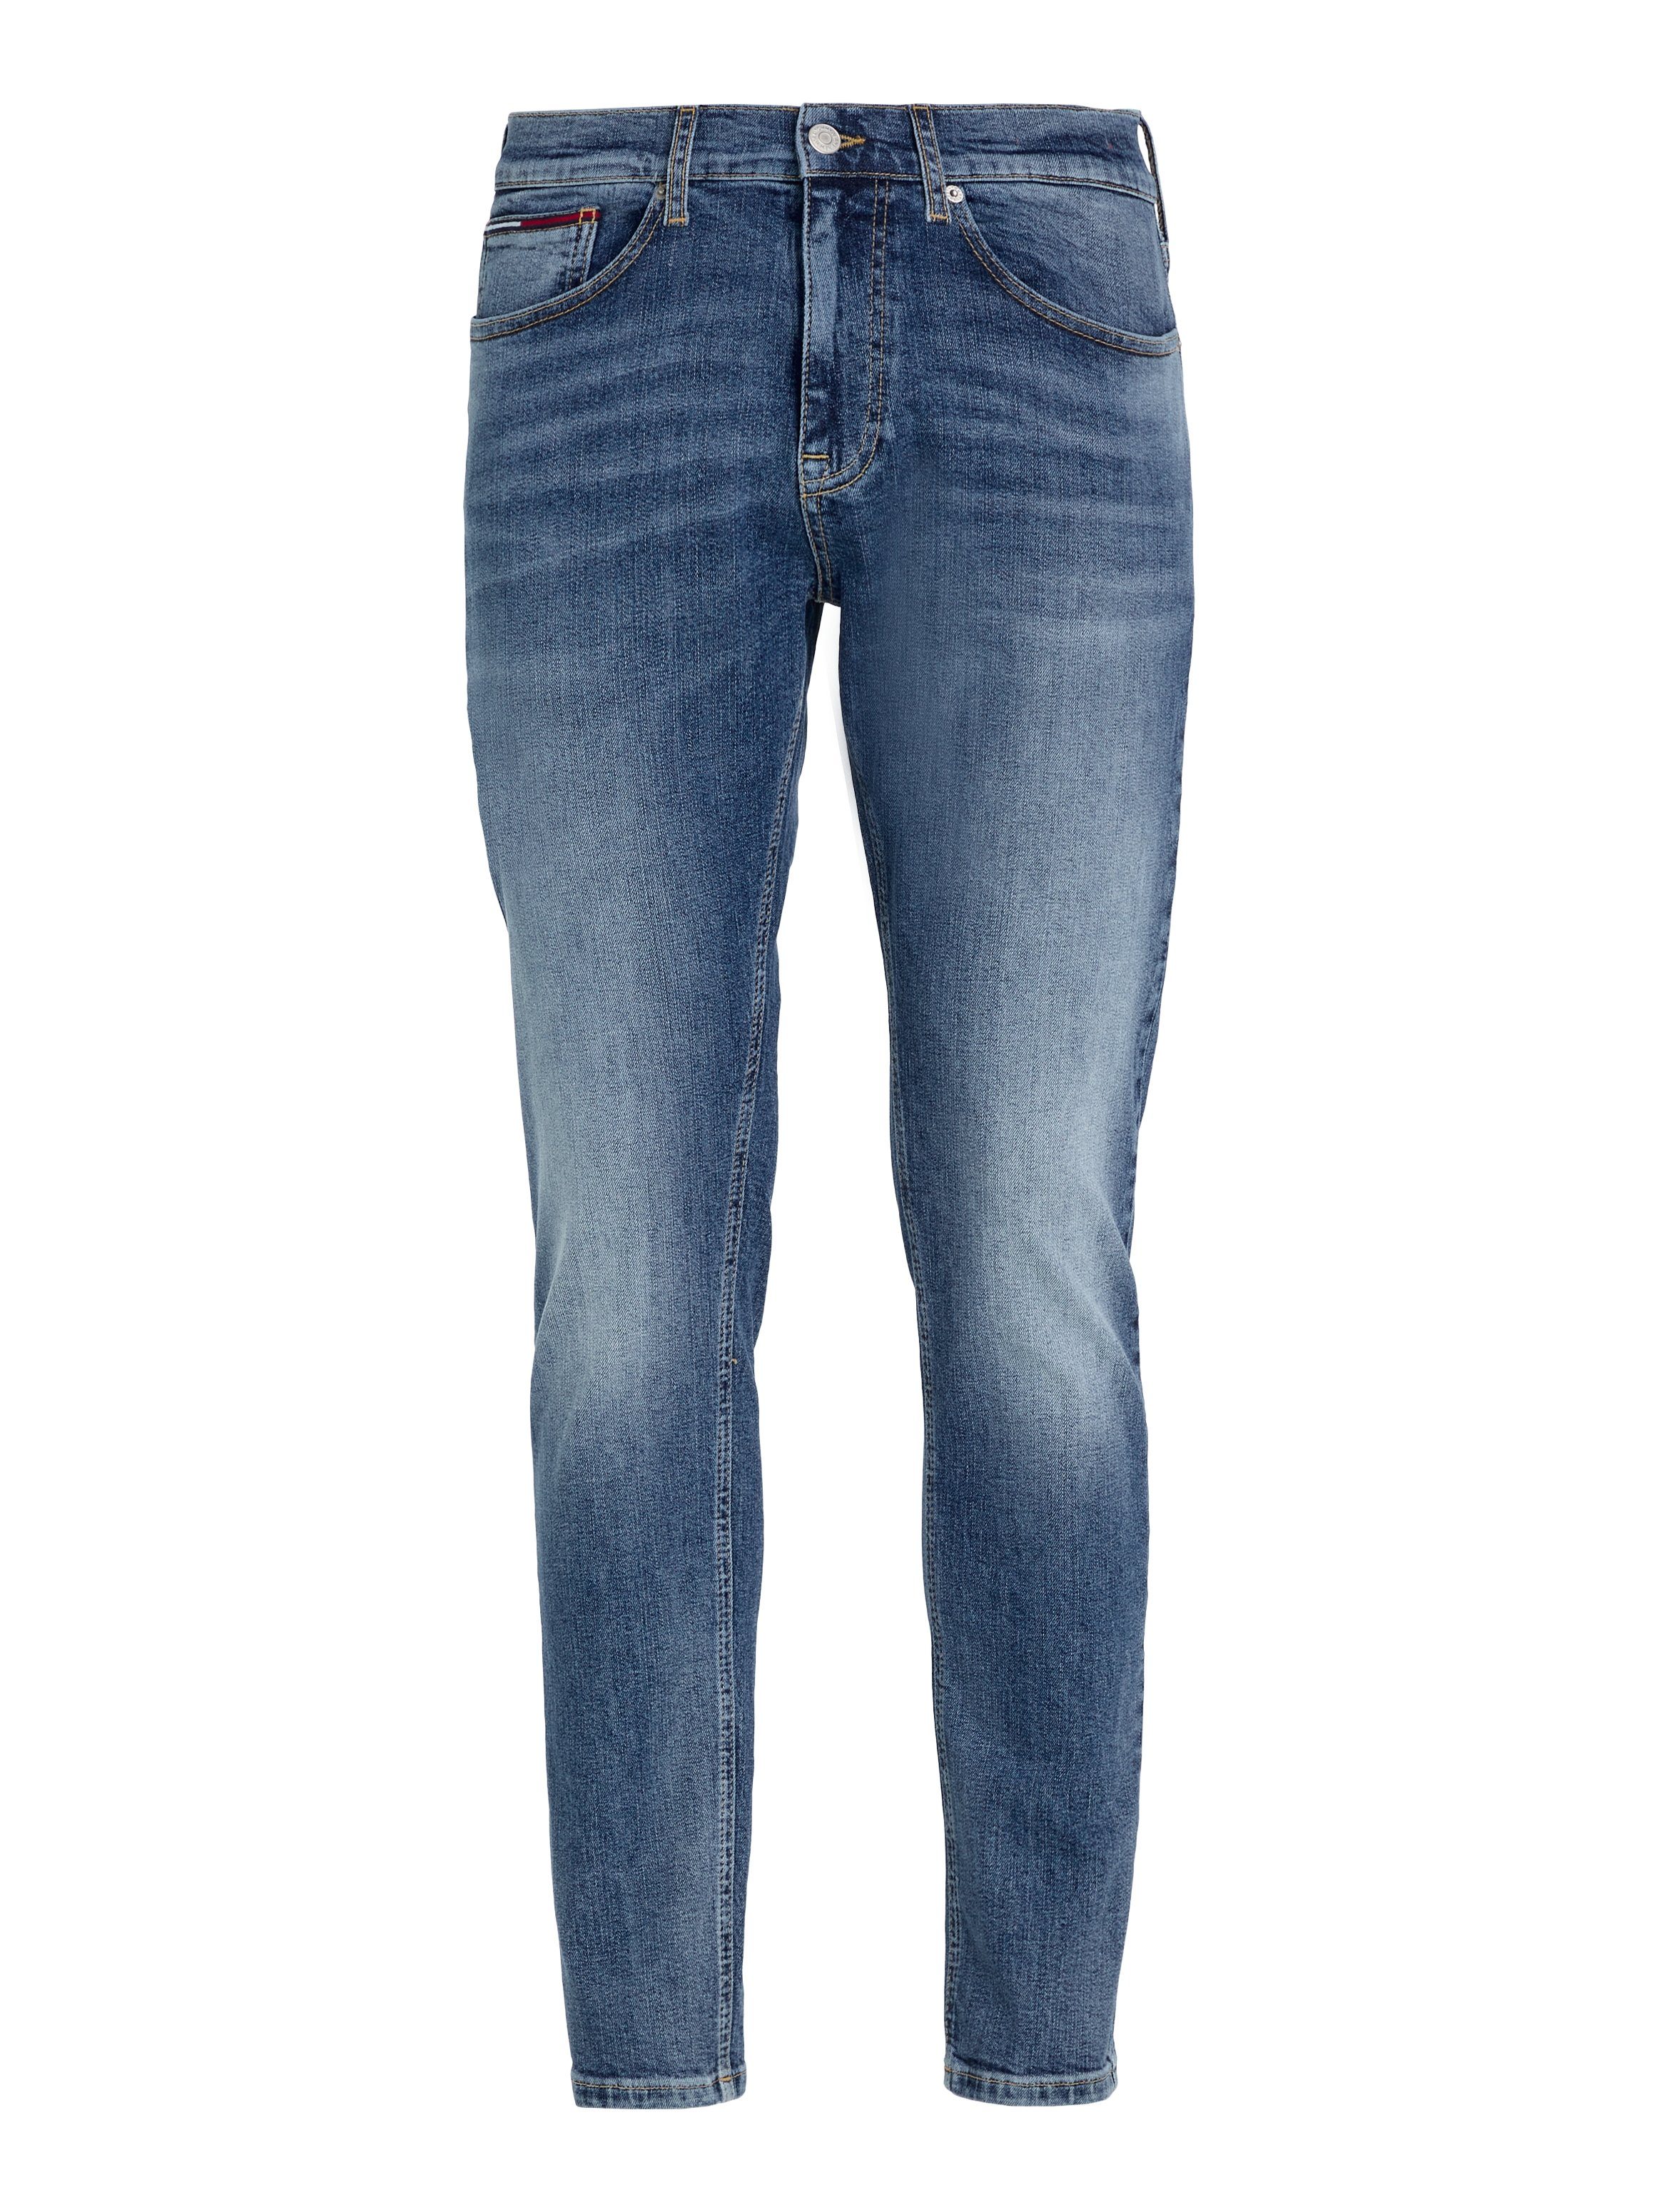 TPRD Tommy light SLIM blue Jeans AUSTIN 1AB 5-Pocket-Jeans denim